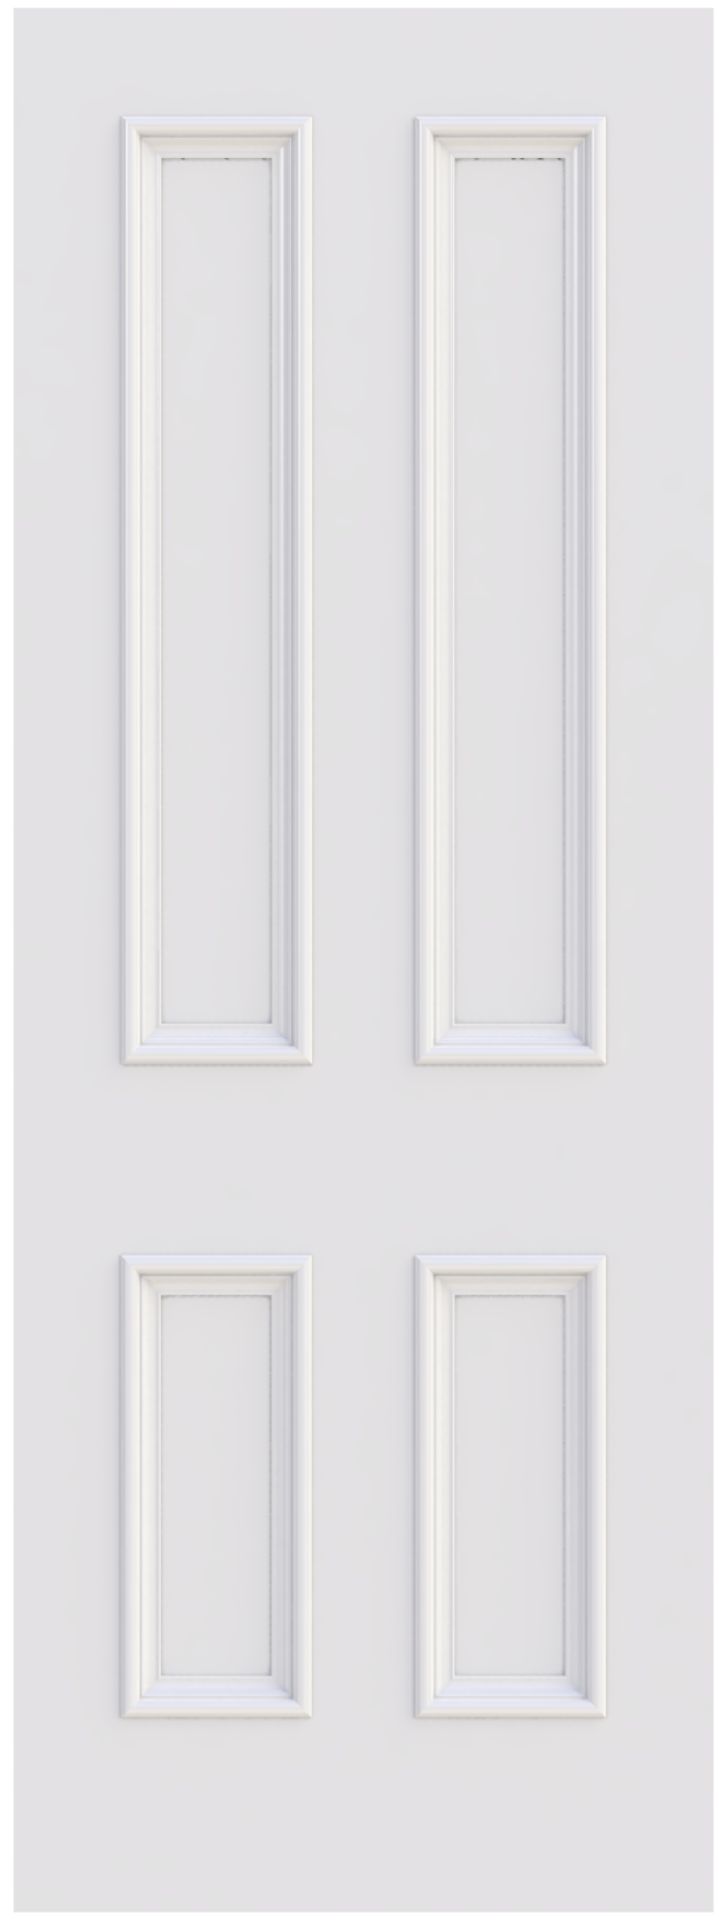 4 Panel Doors